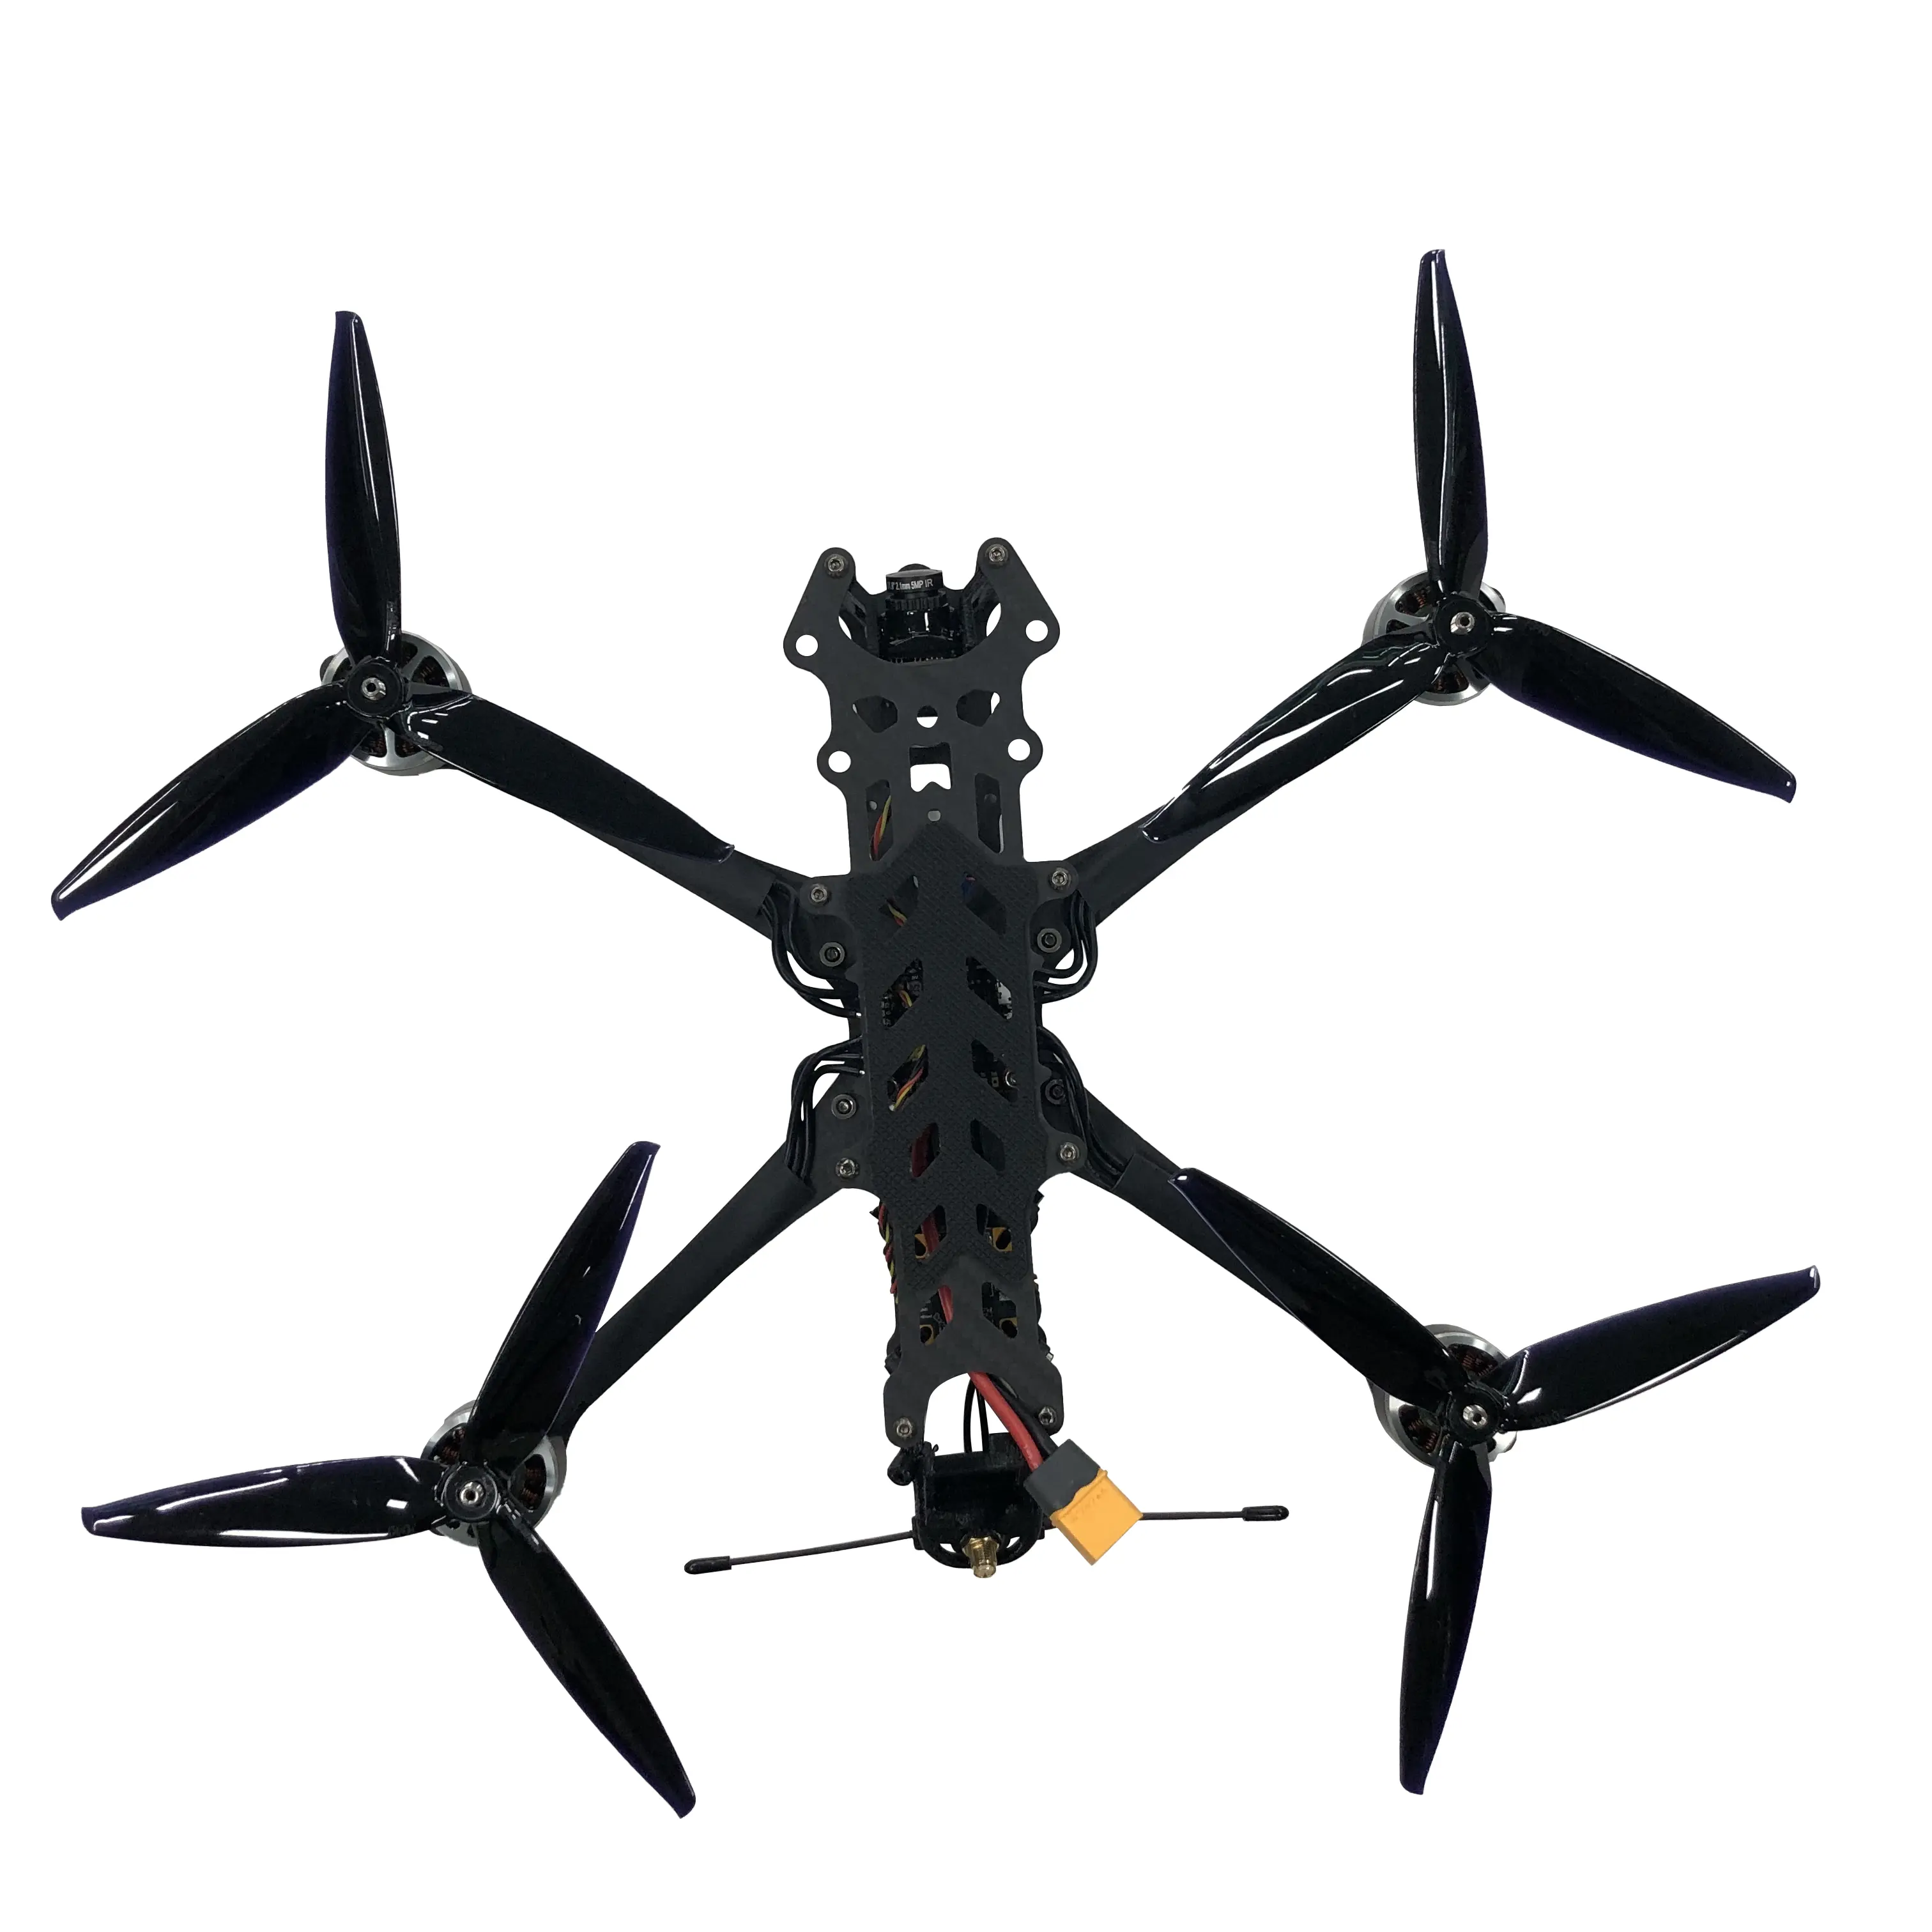 FPV drone 2 kilogramos 7 pulgadas 5000m de altura imagen Combo con control remoto H12 Drones profesional nueva garantía